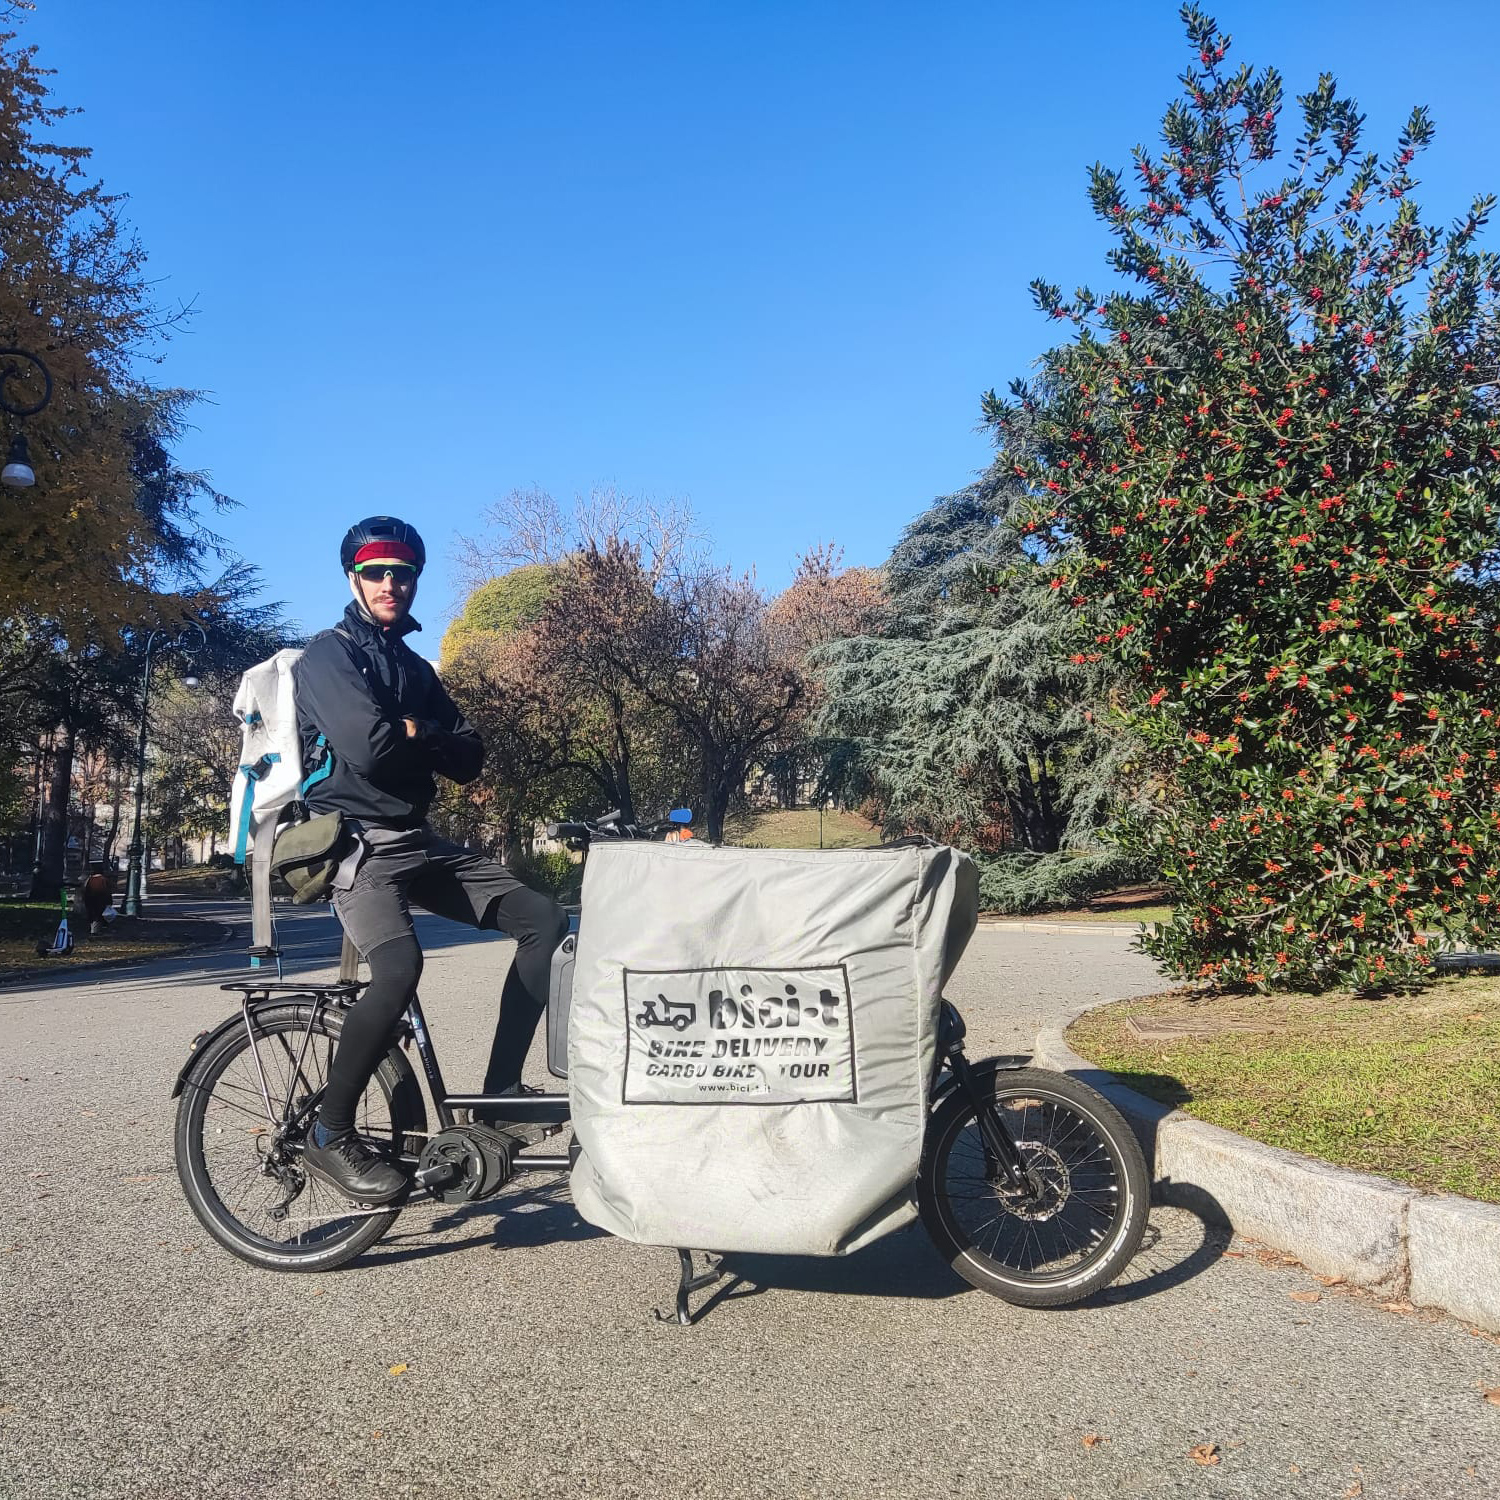 Le cargo bike di Bici-t possono trasportare grossi volumi